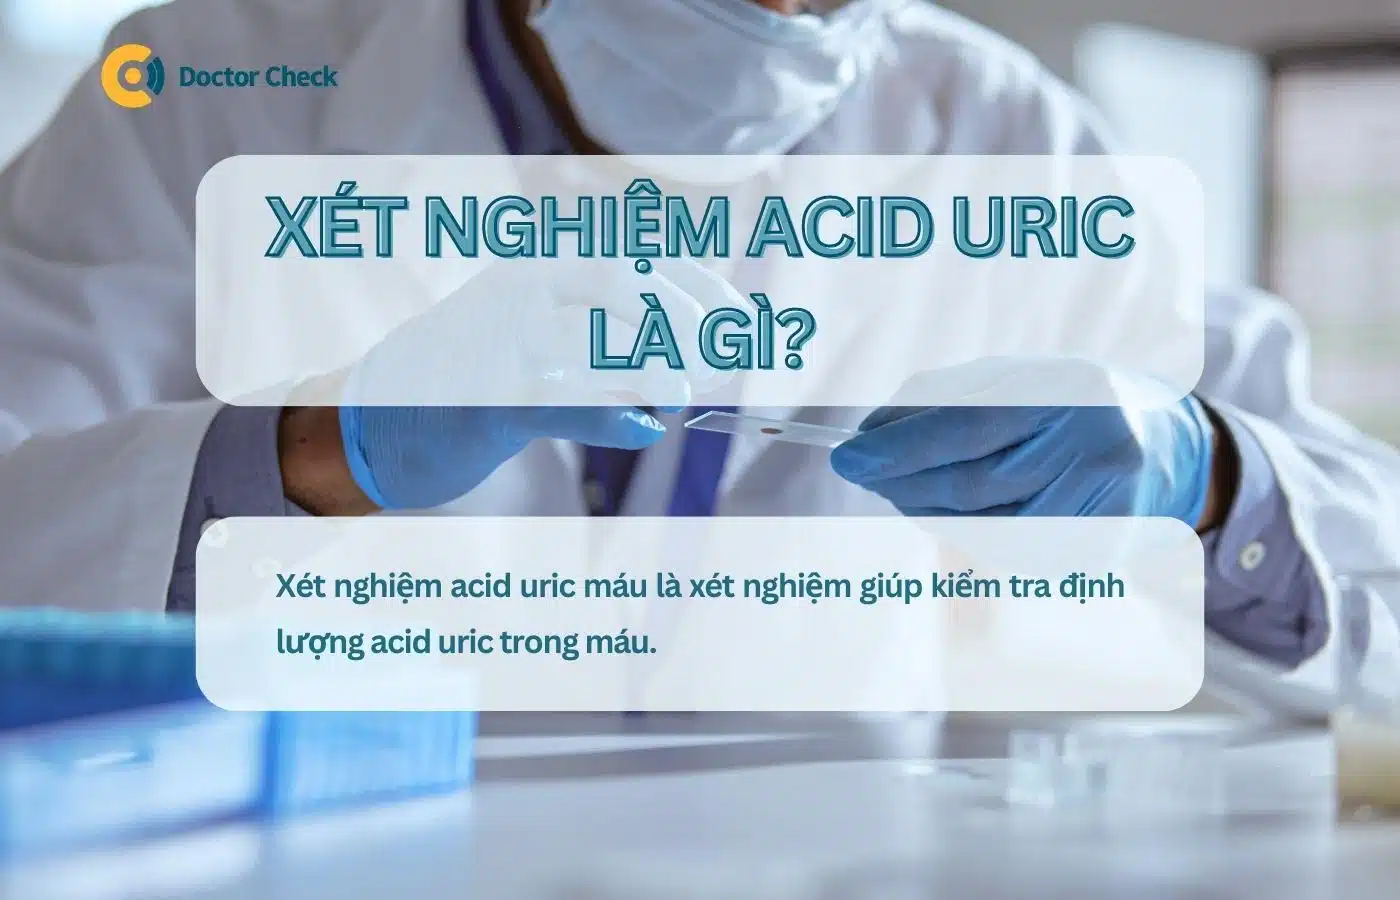 Xét nghiệm acid uric là gì?